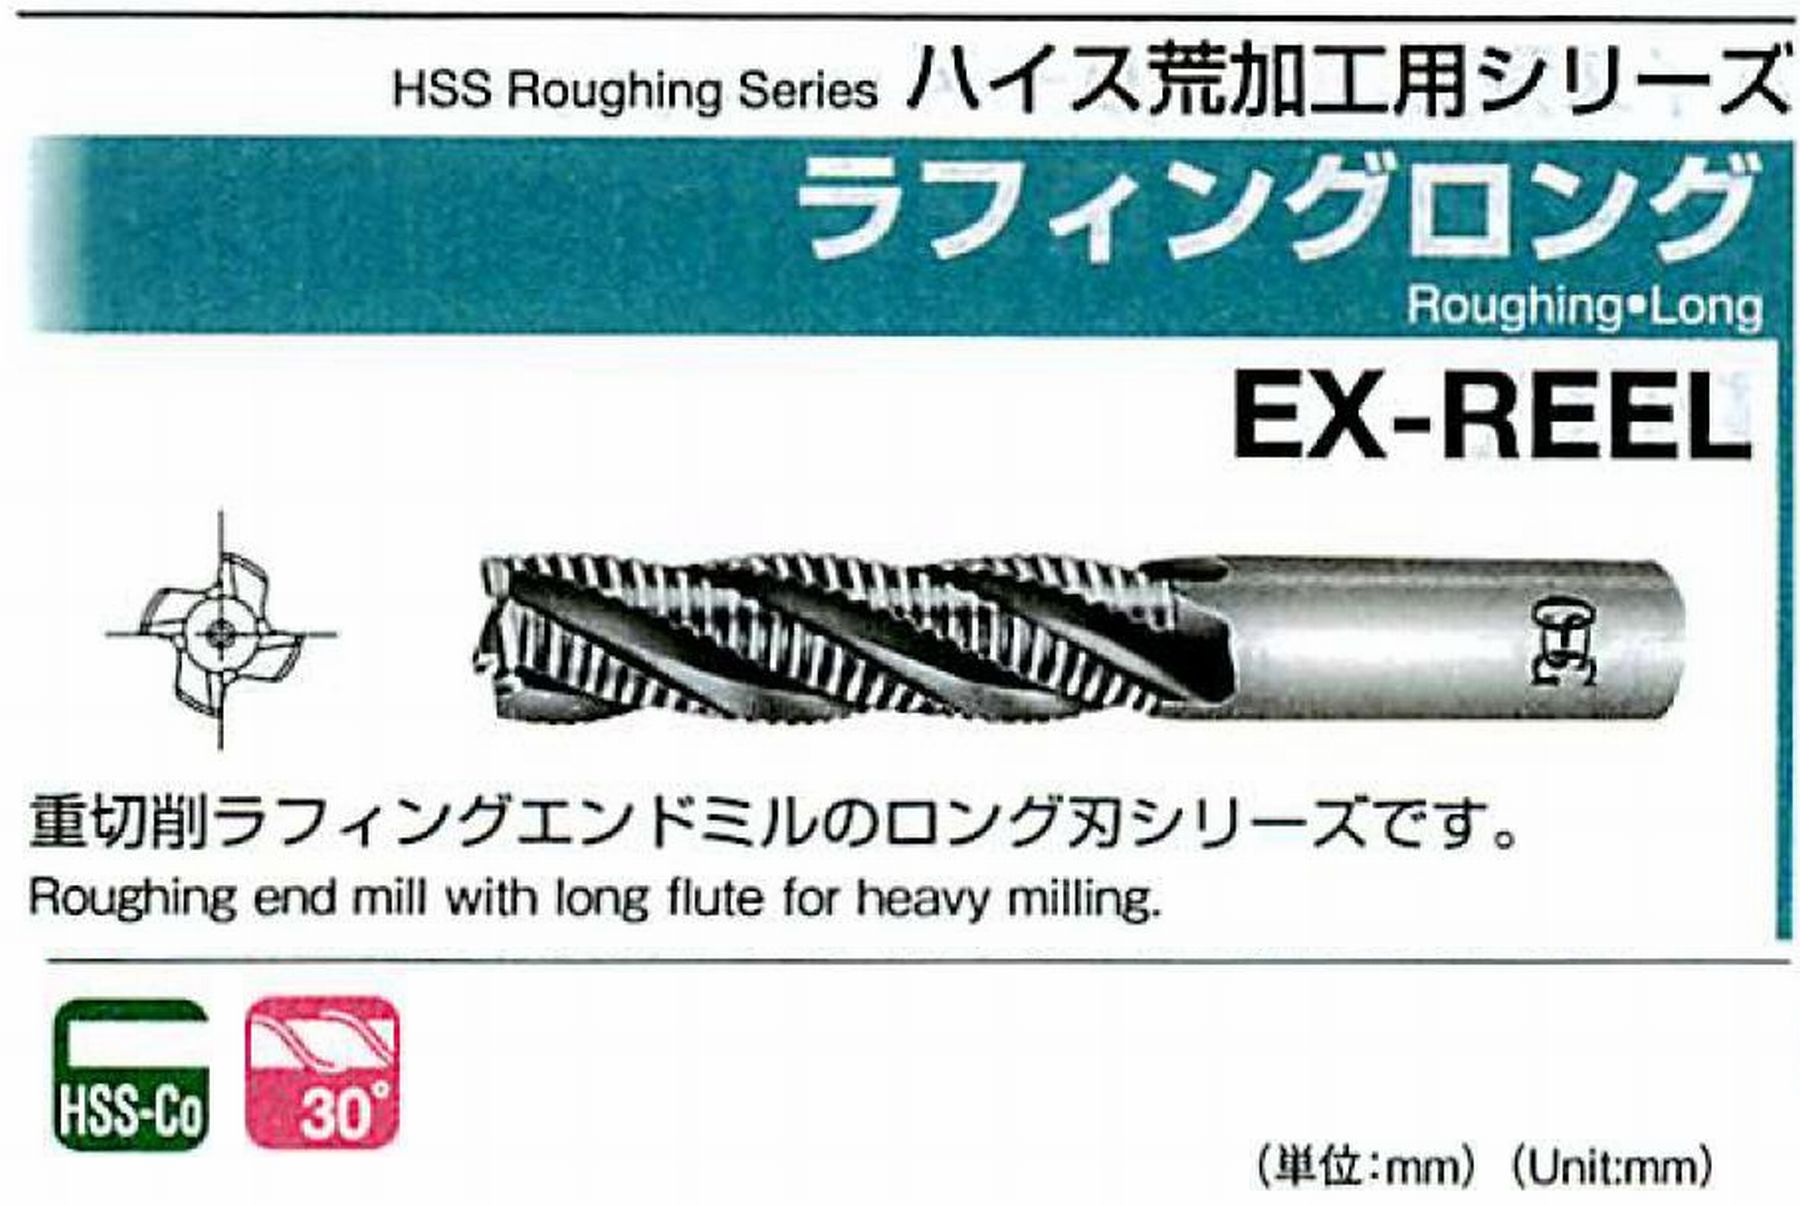 オーエスジー/OSG ラフィング ロング EX-REEL 外径30 全長166 刃長90 シャンク径25mm 刃数6